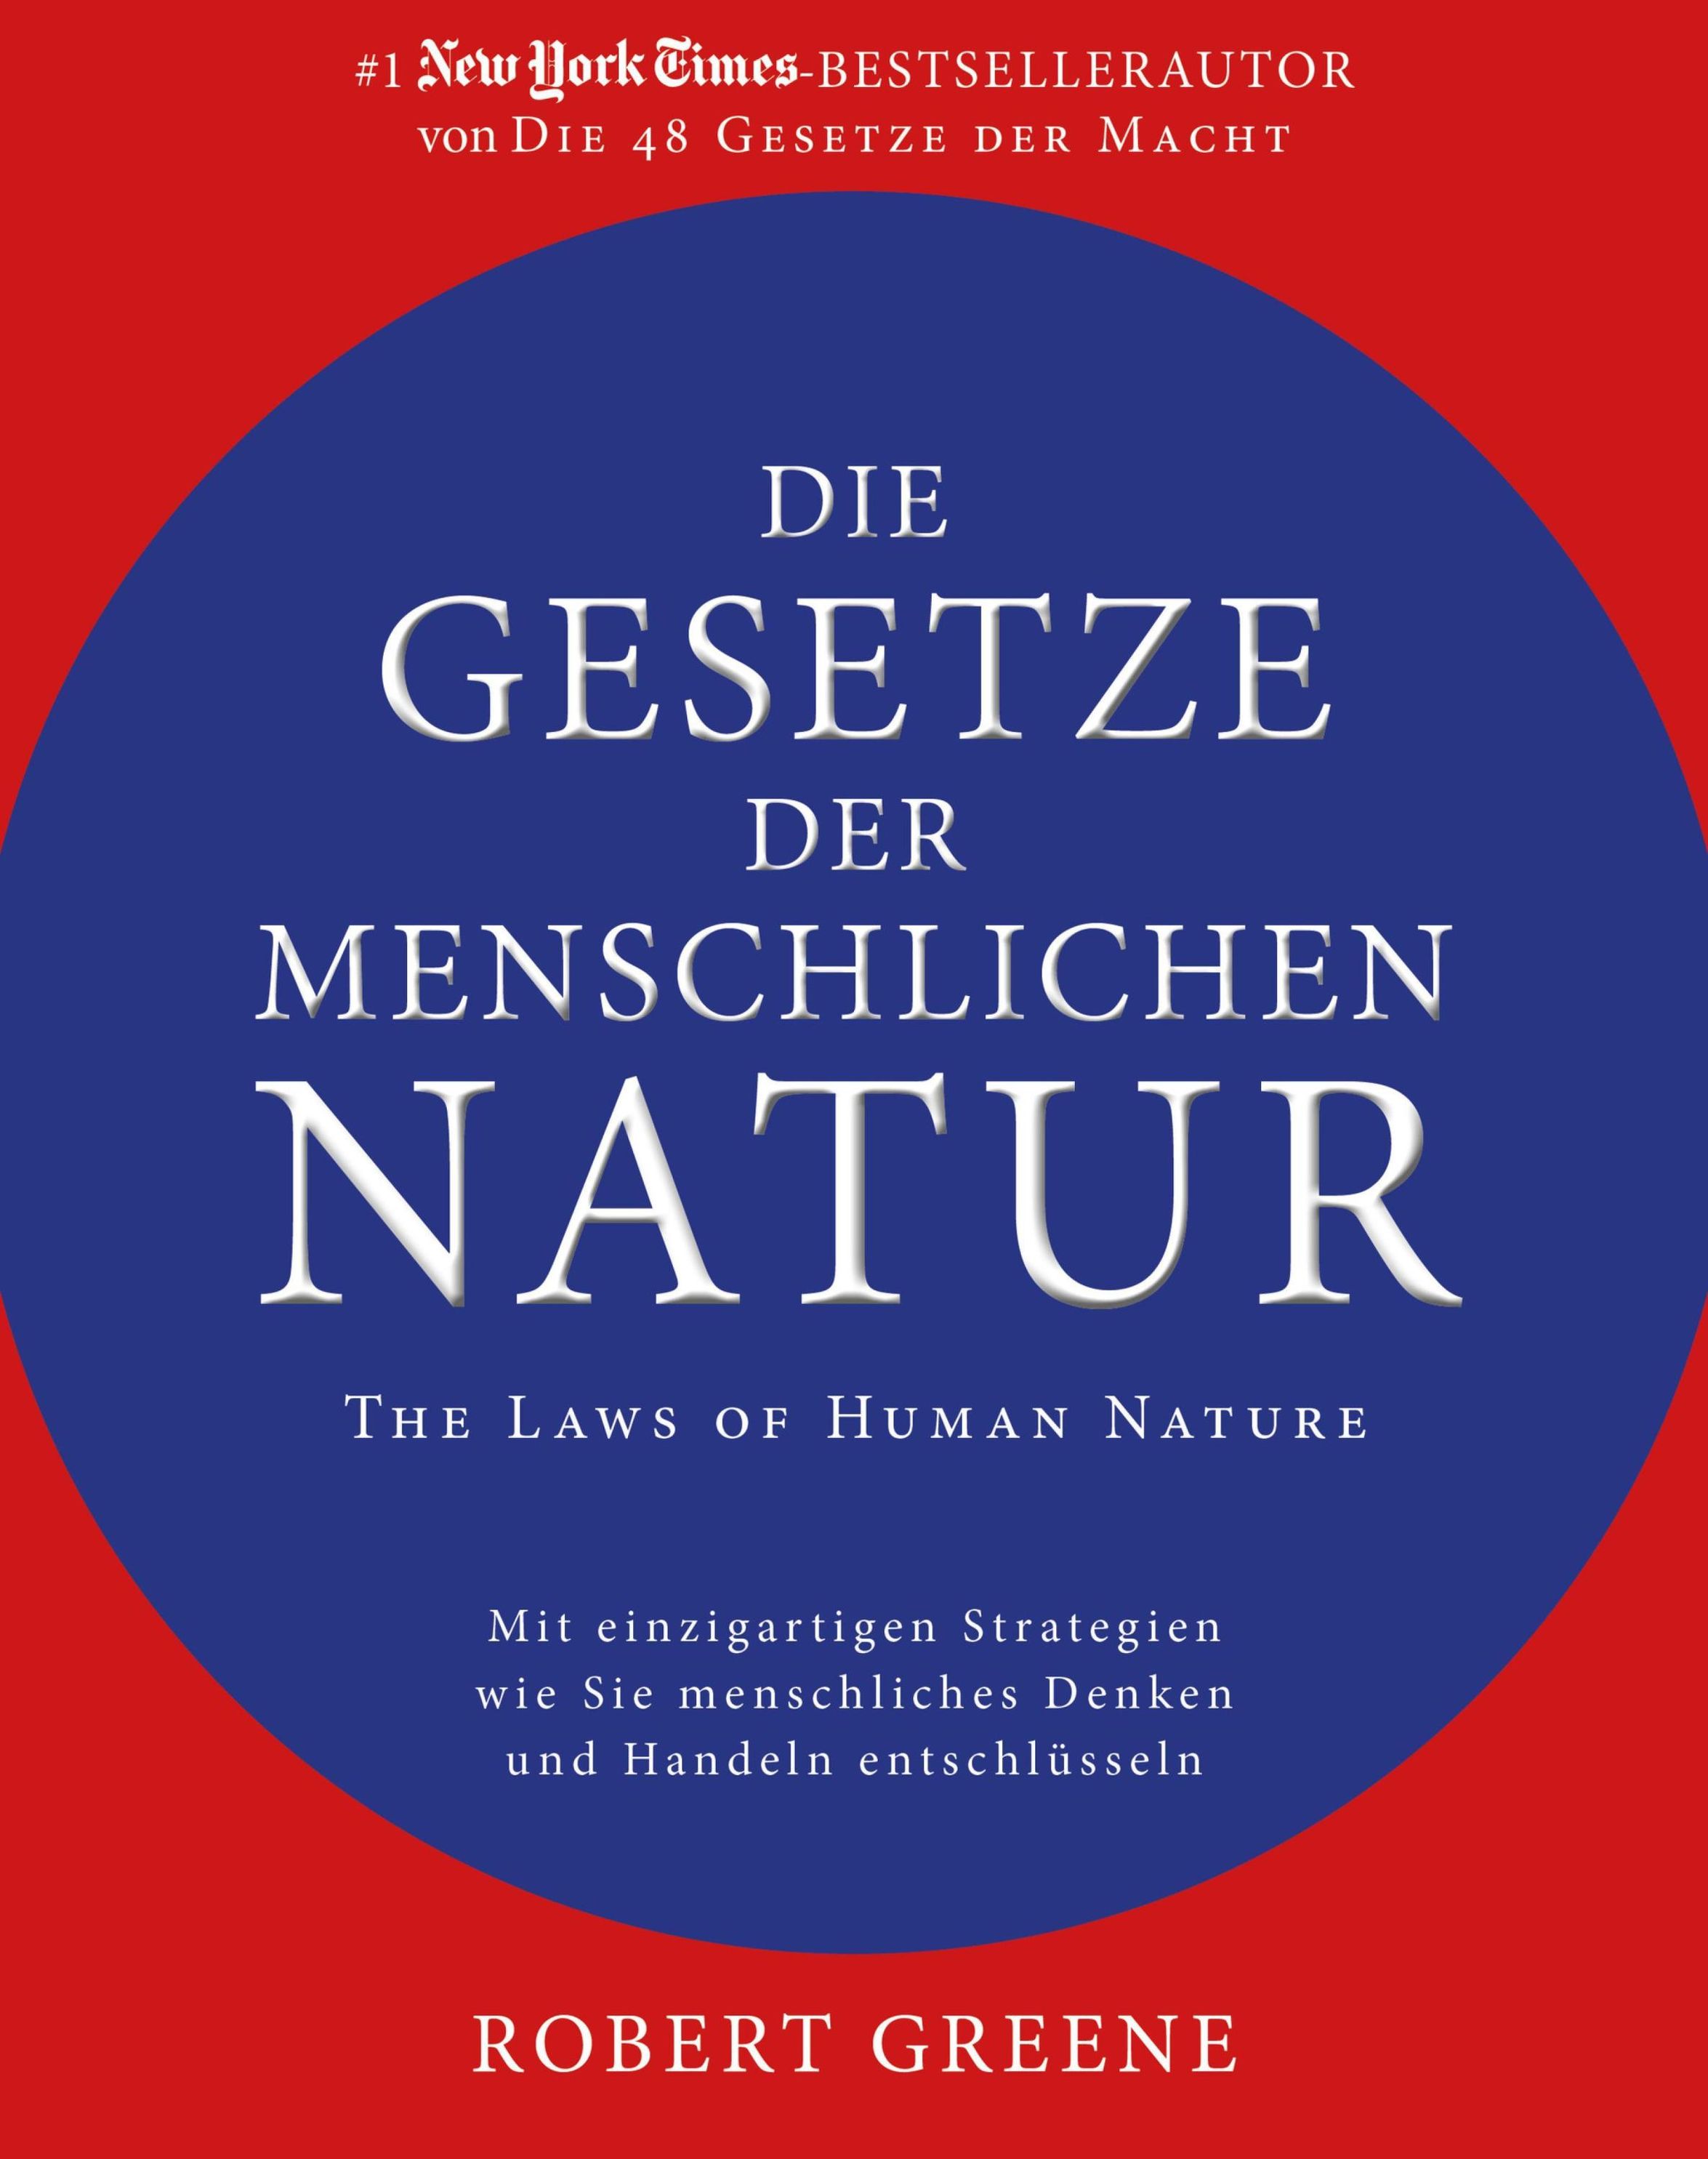 Die Gesetze der menschlichen Natur - The Laws of Human Nature ebook |  Weltbild.de